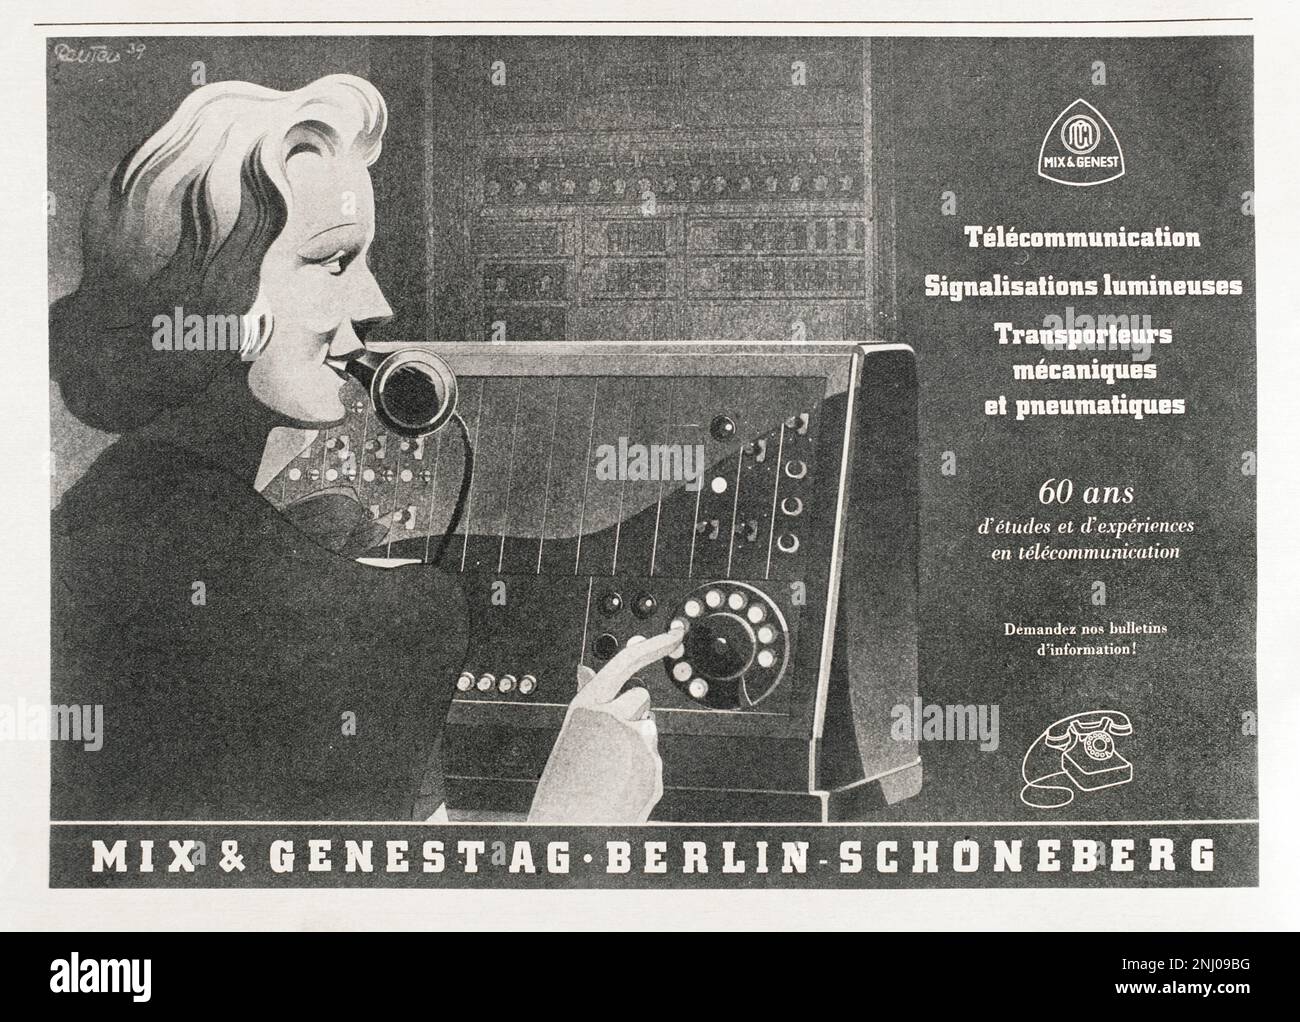 Pubblicità per i prodotti di telefonia Mix & Genest su una delle pagine interne della rivista 'Signal', numero 8 (25 luglio 1940) dell'edizione francese. Questa società tedesca è stata fondata il 1 ottobre 1879 dall'industriale Wilhelm Mix e dall'ingegnere Werner Genest. 'Signal' è stato pubblicato tra l'aprile 1940 e l'aprile 1945 ed è stato il principale organo di propaganda dell'esercito tedesco durante la seconda guerra mondiale. Foto Stock